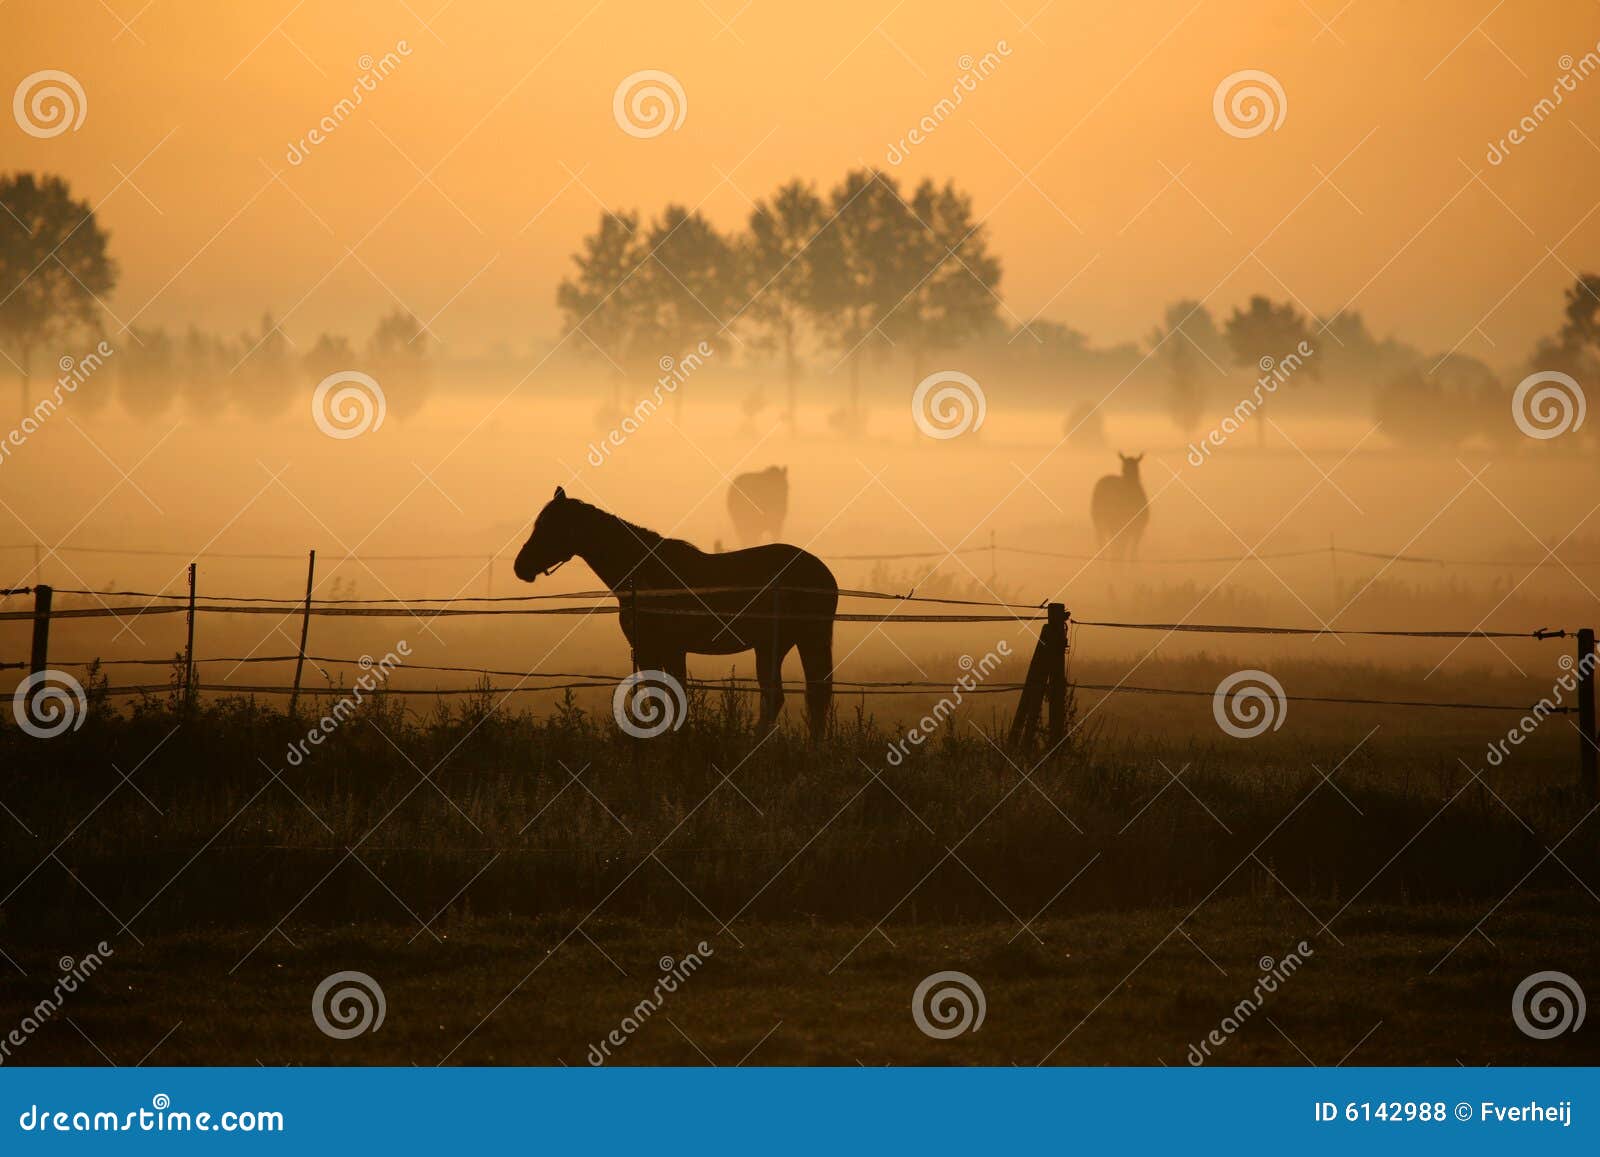 horse in morning fog